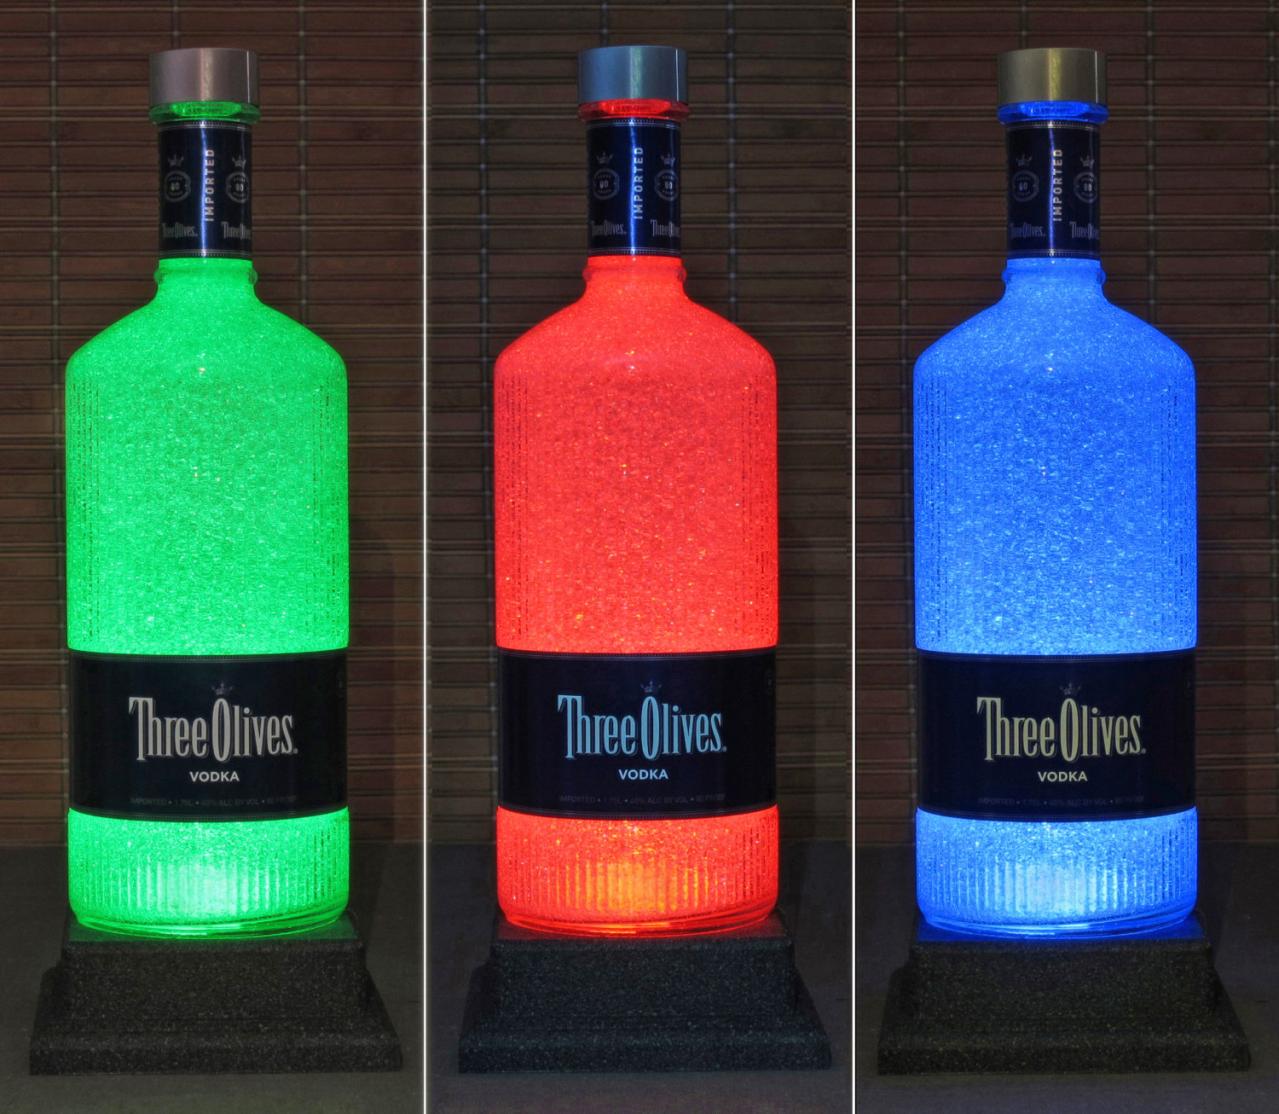 Three Olives English Vodka 1.75 Liter LED Color Change Bottle Lamp Remote Bar Light Man Cave